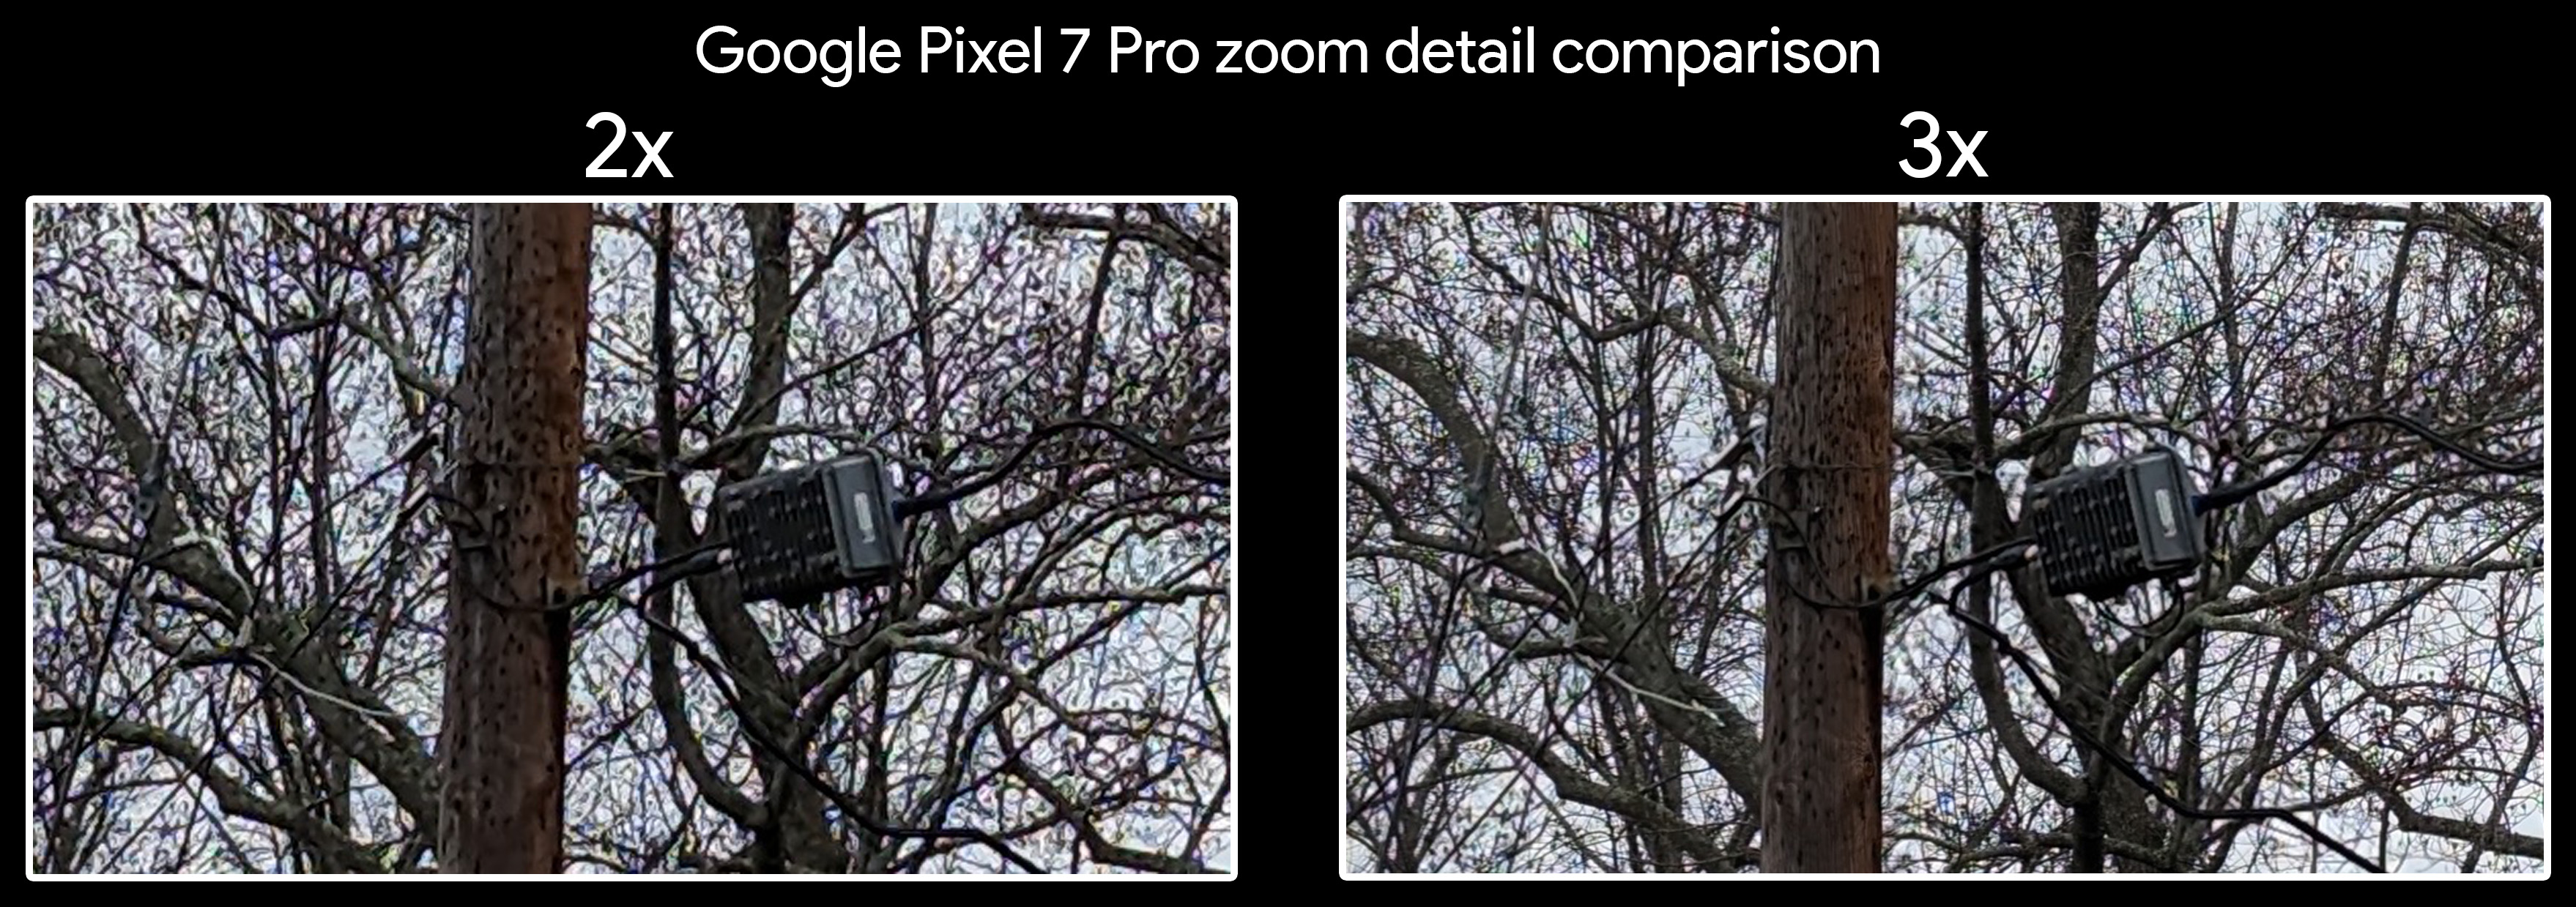 Comparando el detalle del zoom 2x y 3x en un Google Pixel 7 Pro